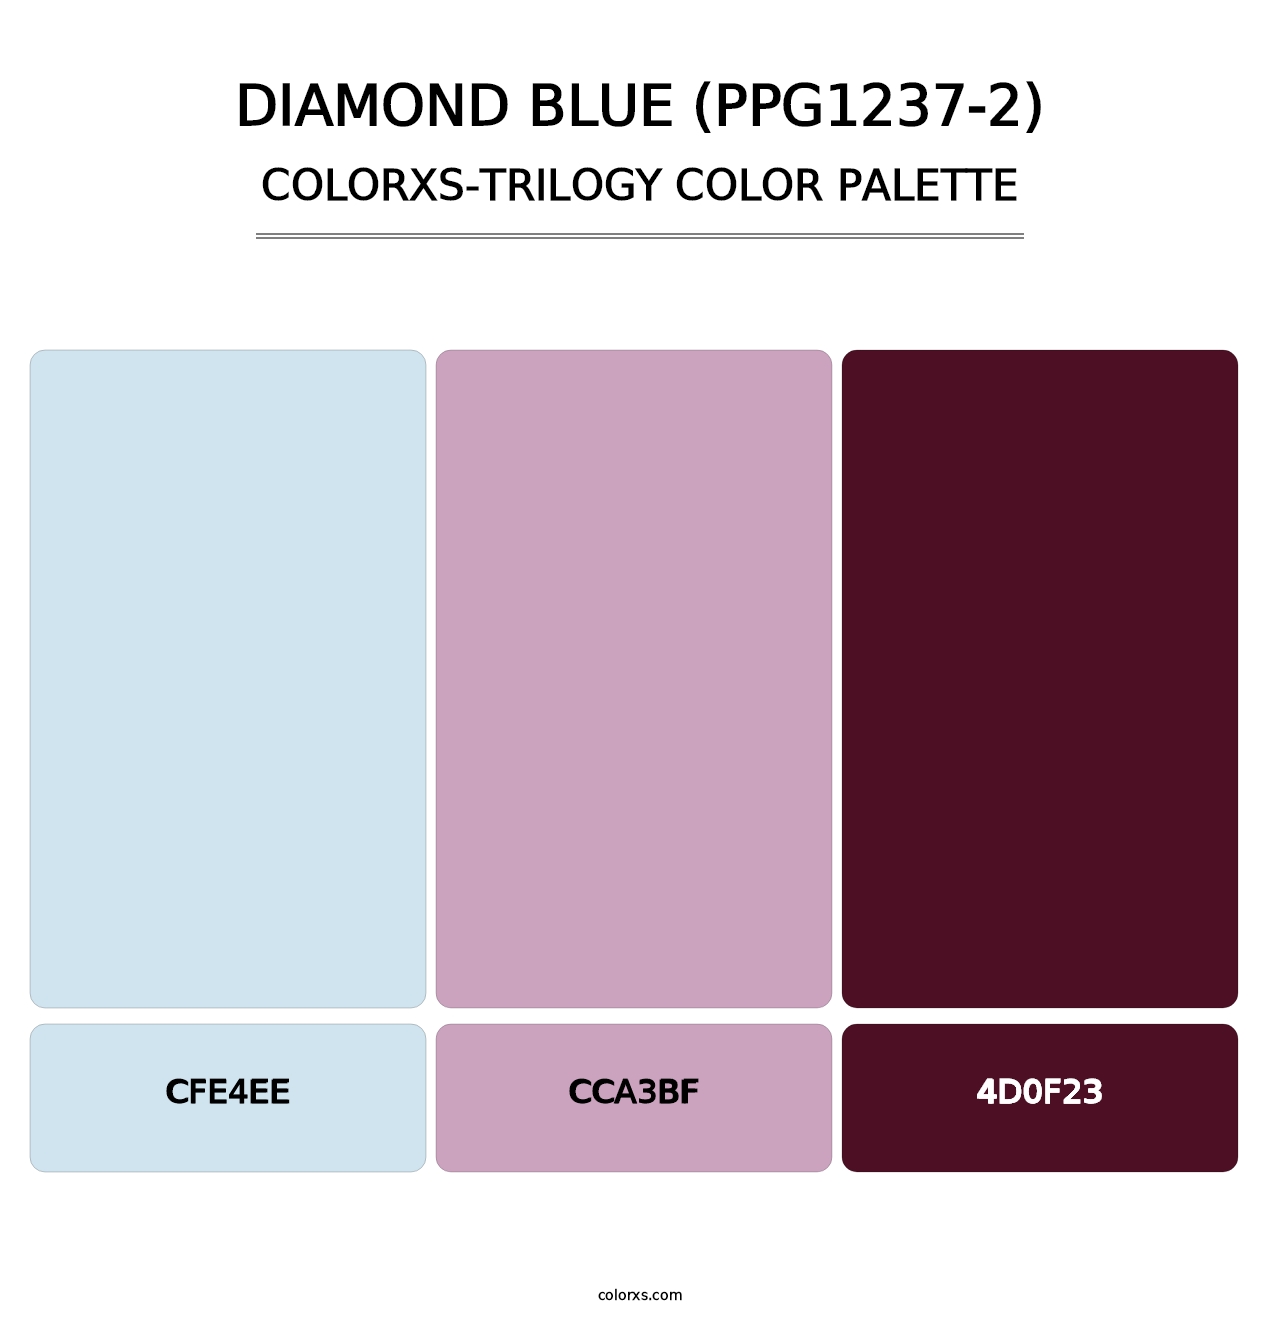 Diamond Blue (PPG1237-2) - Colorxs Trilogy Palette